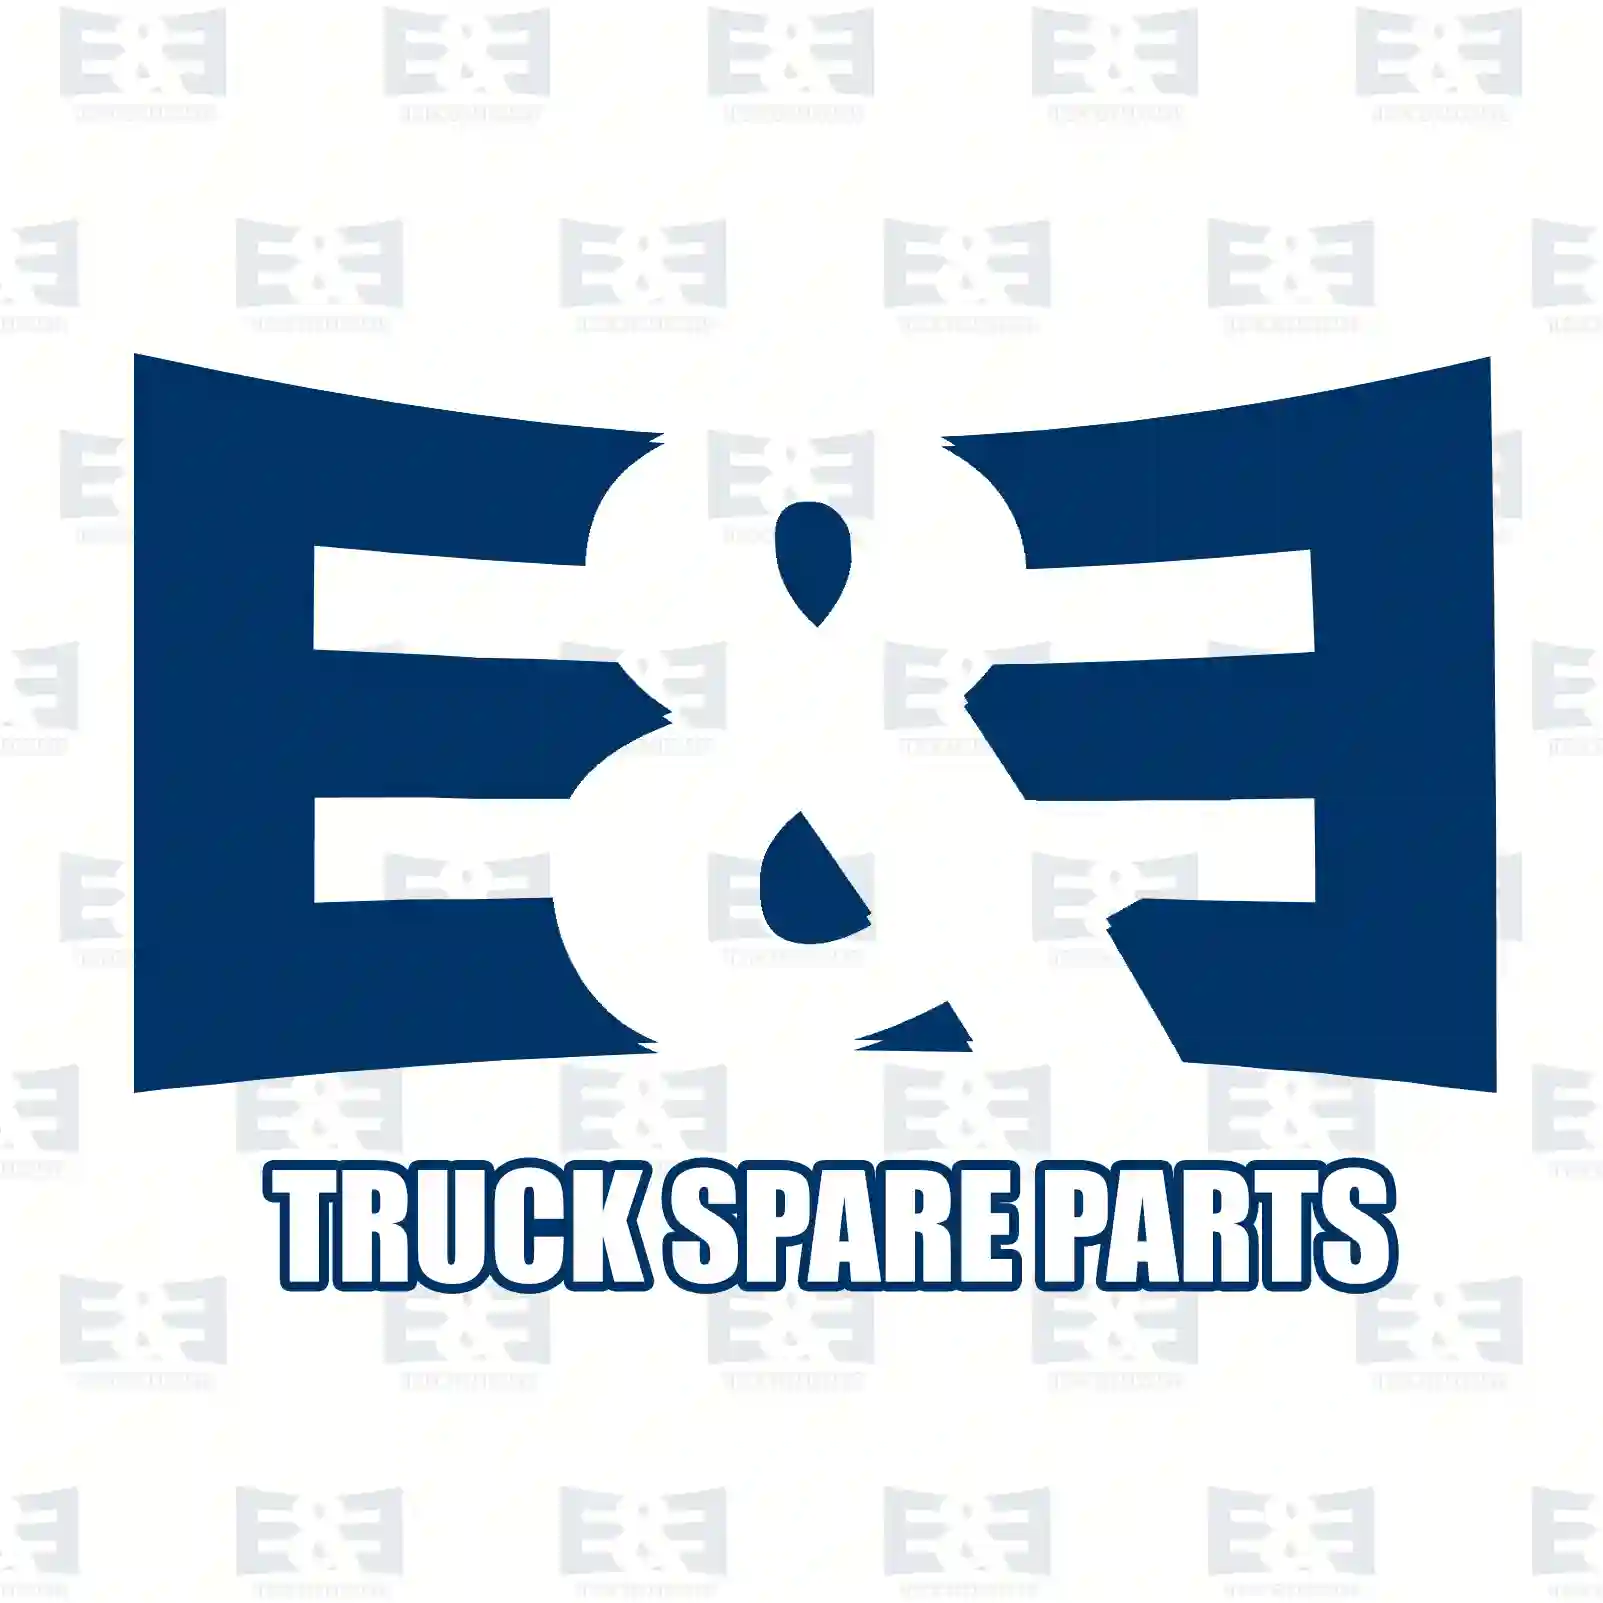 Air deflector kit, 2E2289685, ] ||  2E2289685 E&E Truck Spare Parts | Truck Spare Parts, Auotomotive Spare Parts Air deflector kit, 2E2289685, ] ||  2E2289685 E&E Truck Spare Parts | Truck Spare Parts, Auotomotive Spare Parts